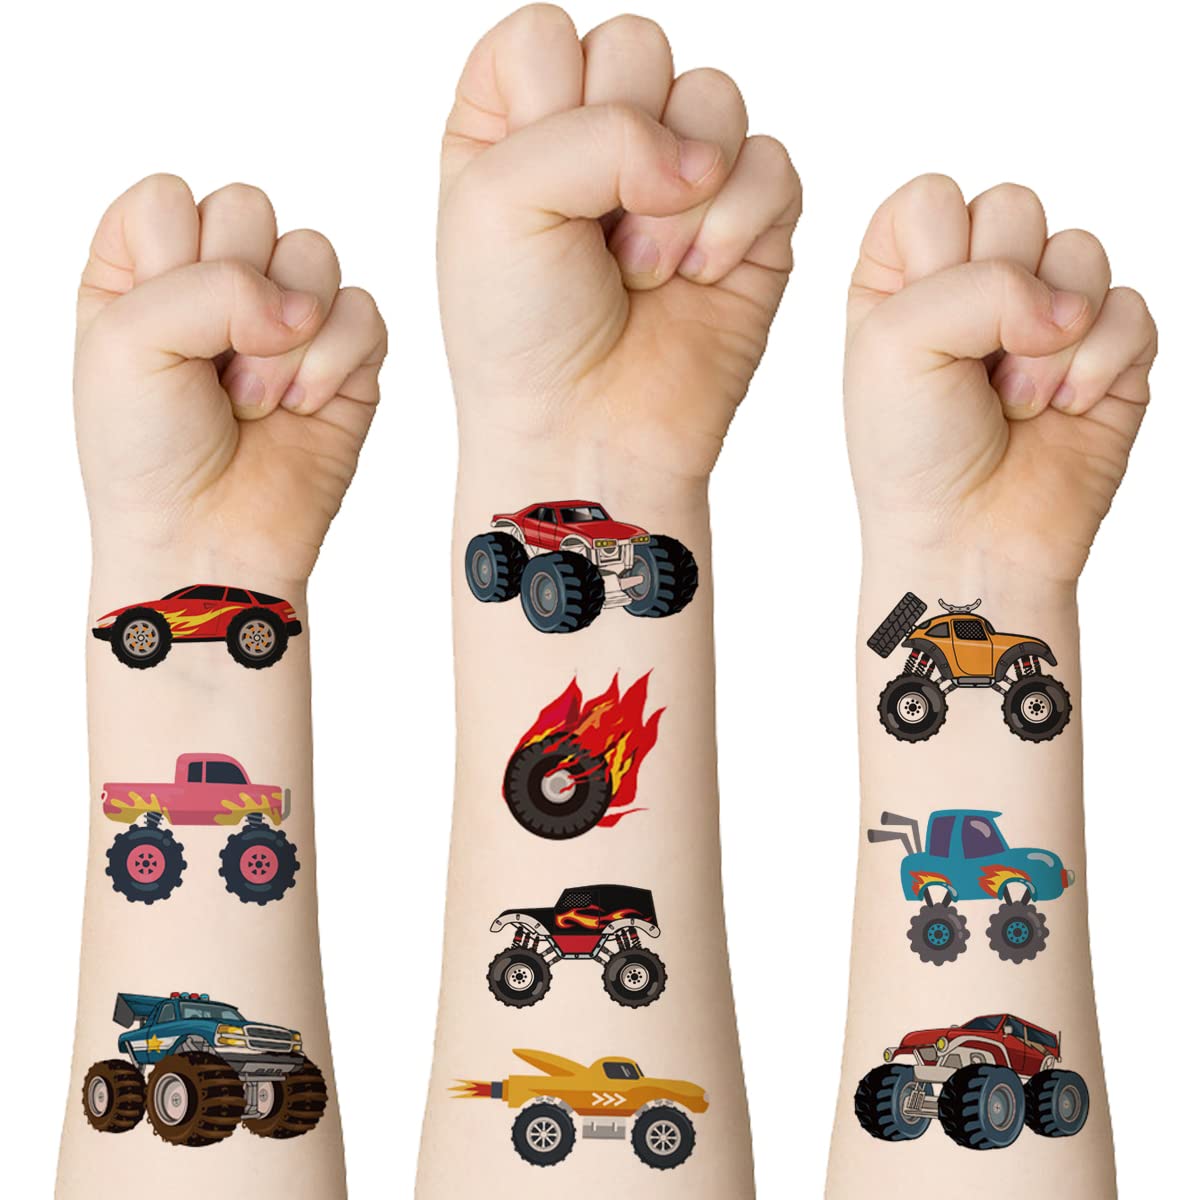 Truck Driver Memorial Tattoo At Tattoodesigns1001 | Tatuaje de camión,  Tatuaje de gorilla, Tatuajes de coche